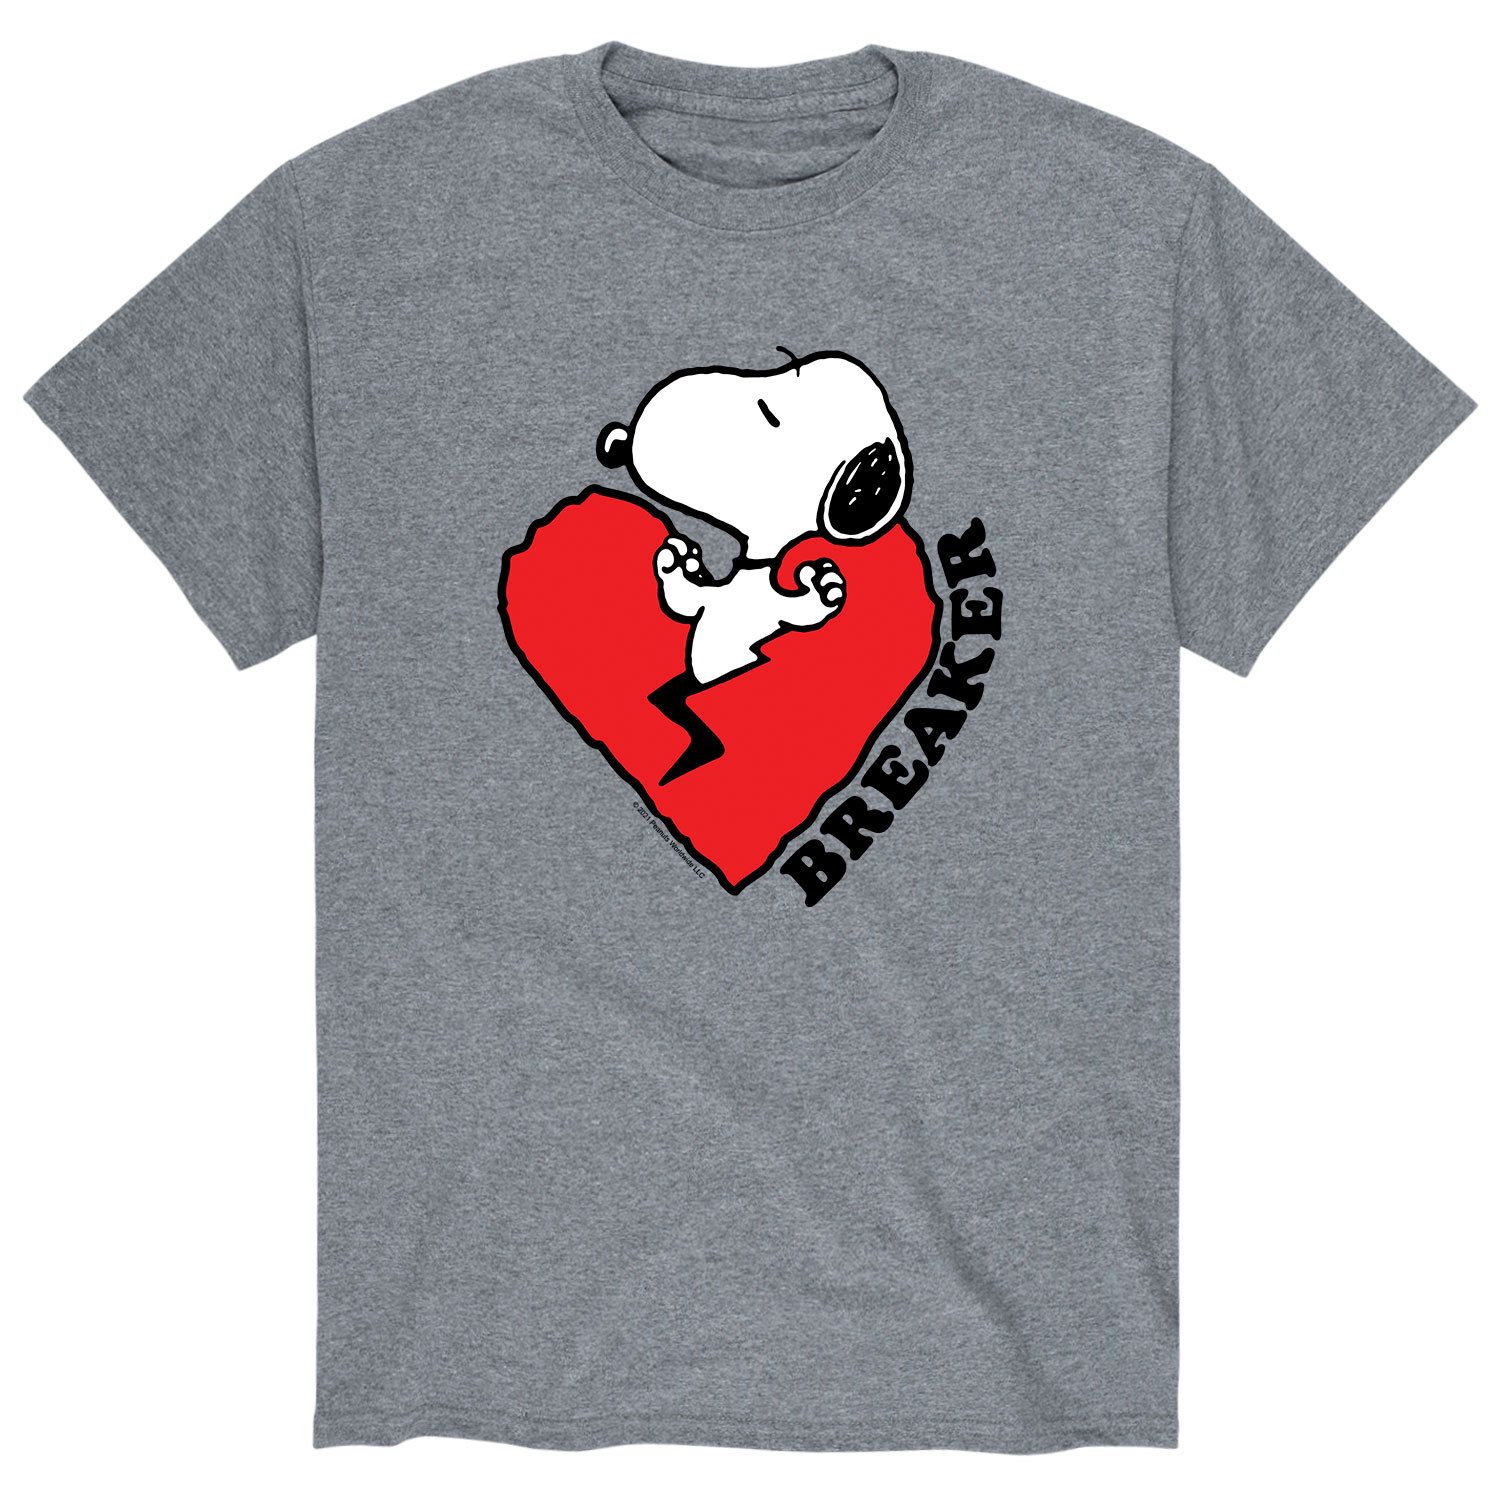 Мужская футболка Heart Breaker с арахисом Licensed Character цена и фото